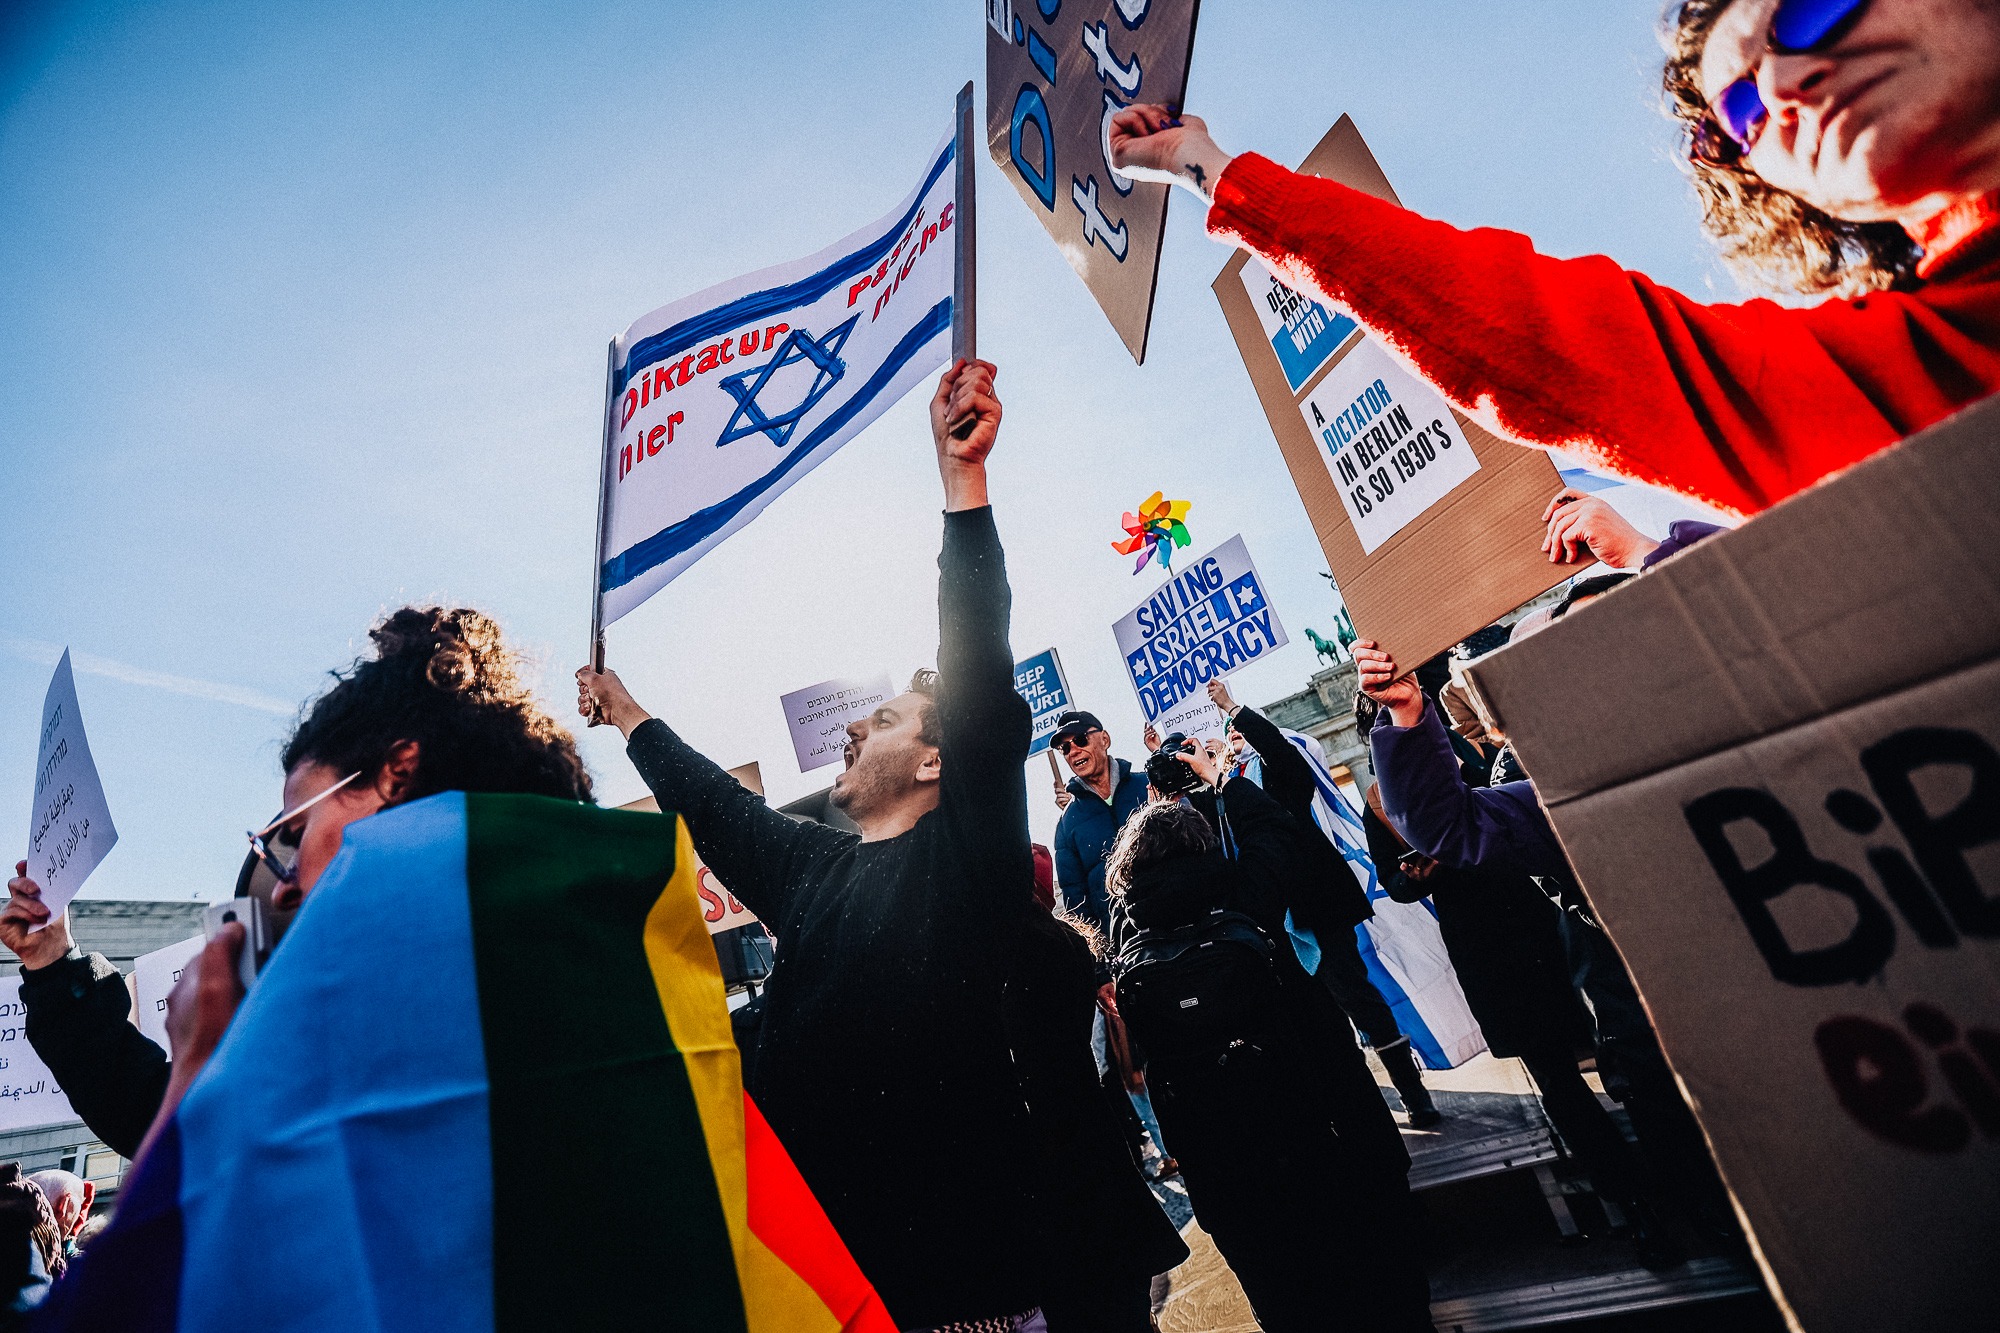 Das Foto zeigt eine Person mit einer israelischen Flagge in einer Menschenmenge. Im Hintergrund sieht man das Brandenburger Tor in Berlin. Das Foto wurde im Rahmen einer Demonstration gegen den Staatsbesuch des israelischen Ministerpräsidenten Benjamin Netanjahu in Berlin für die Bildagentur Getty Images aufgenommen.